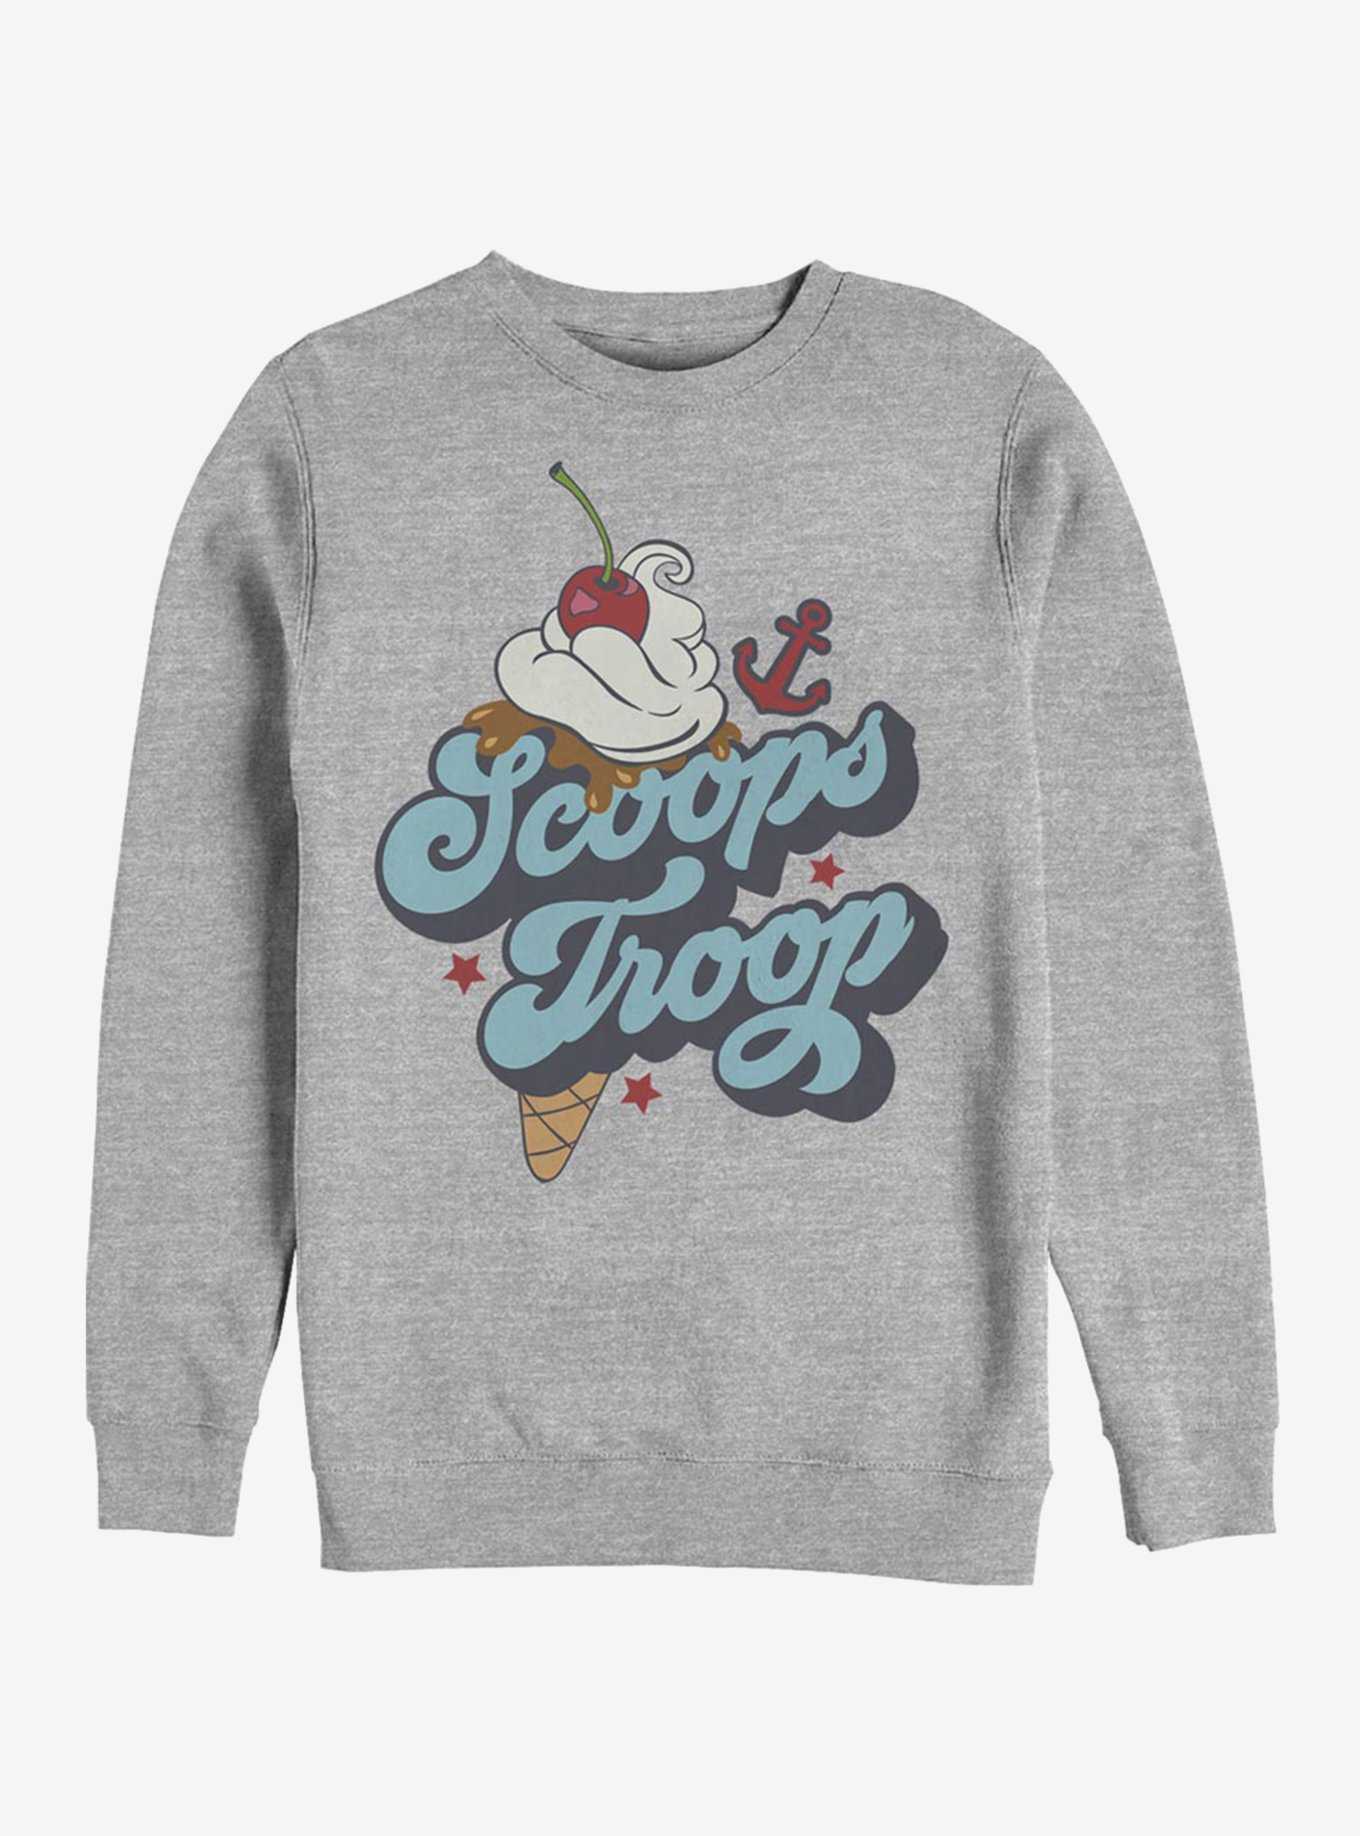 Stranger Things Scoops Troop Ice Cream Sweatshirt, , hi-res